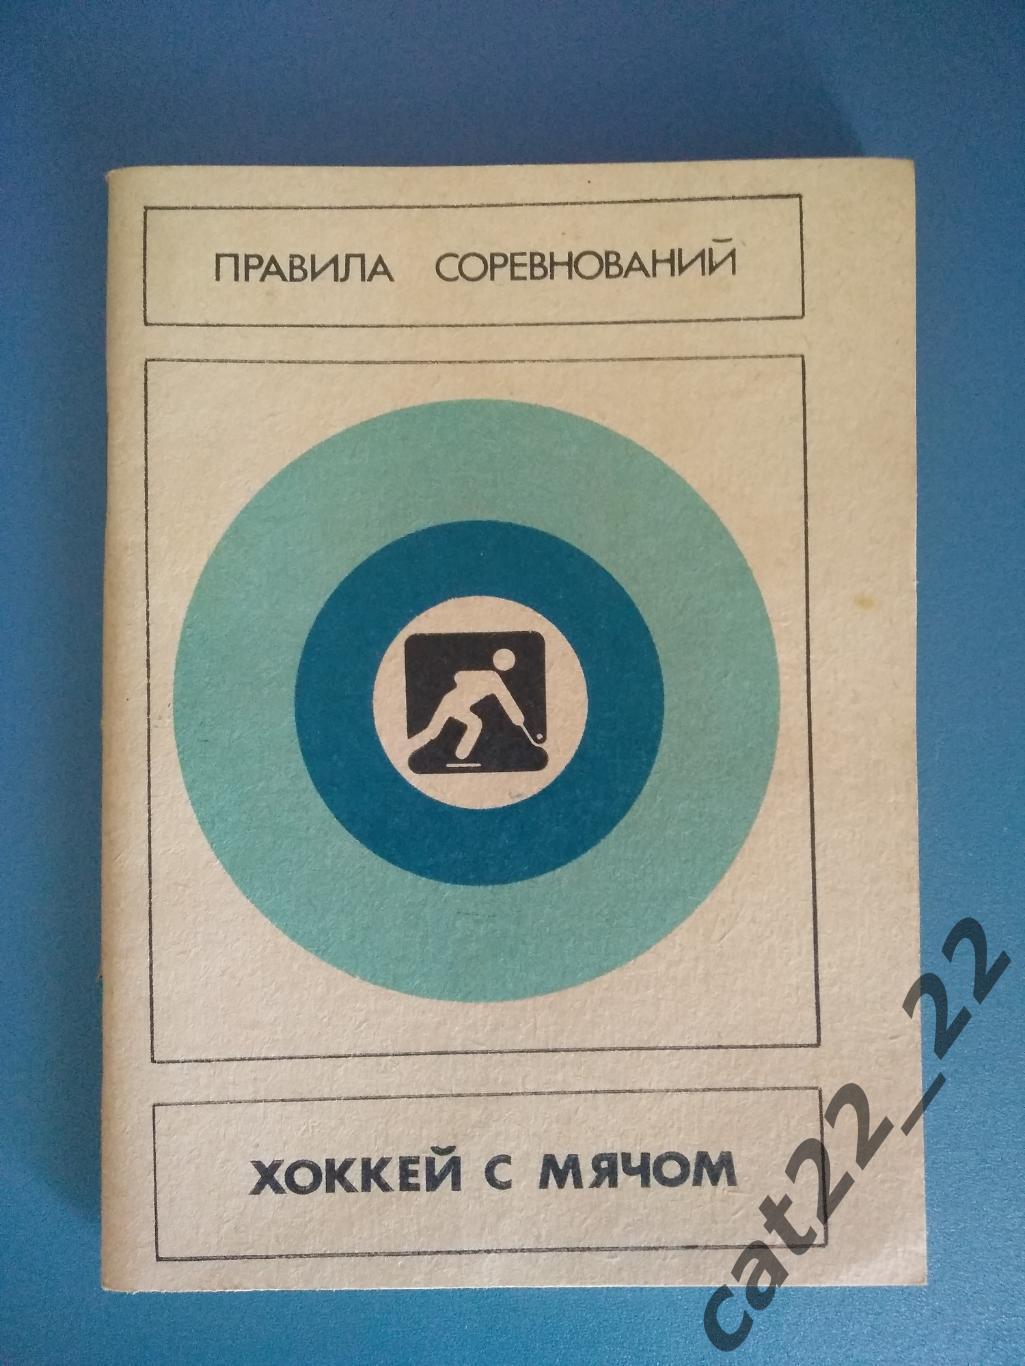 Книга/издание: Правила соревнований. Хоккей с мячом Москва СССР/Россия 1986